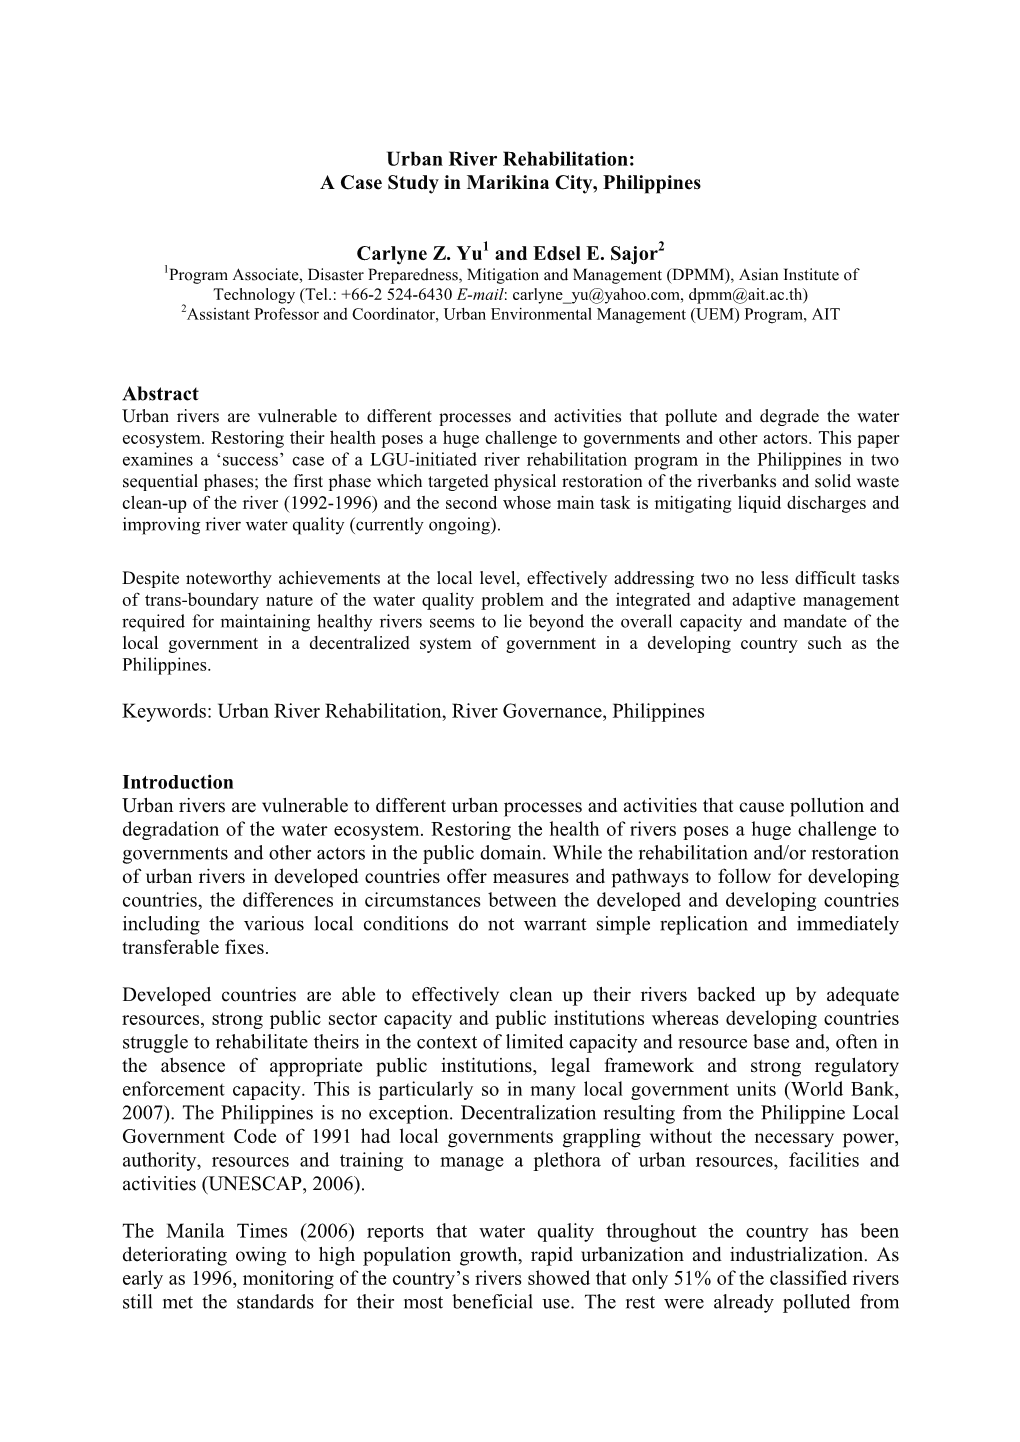 Urban River Rehabilitation: a Case Study in Marikina City, Philippines